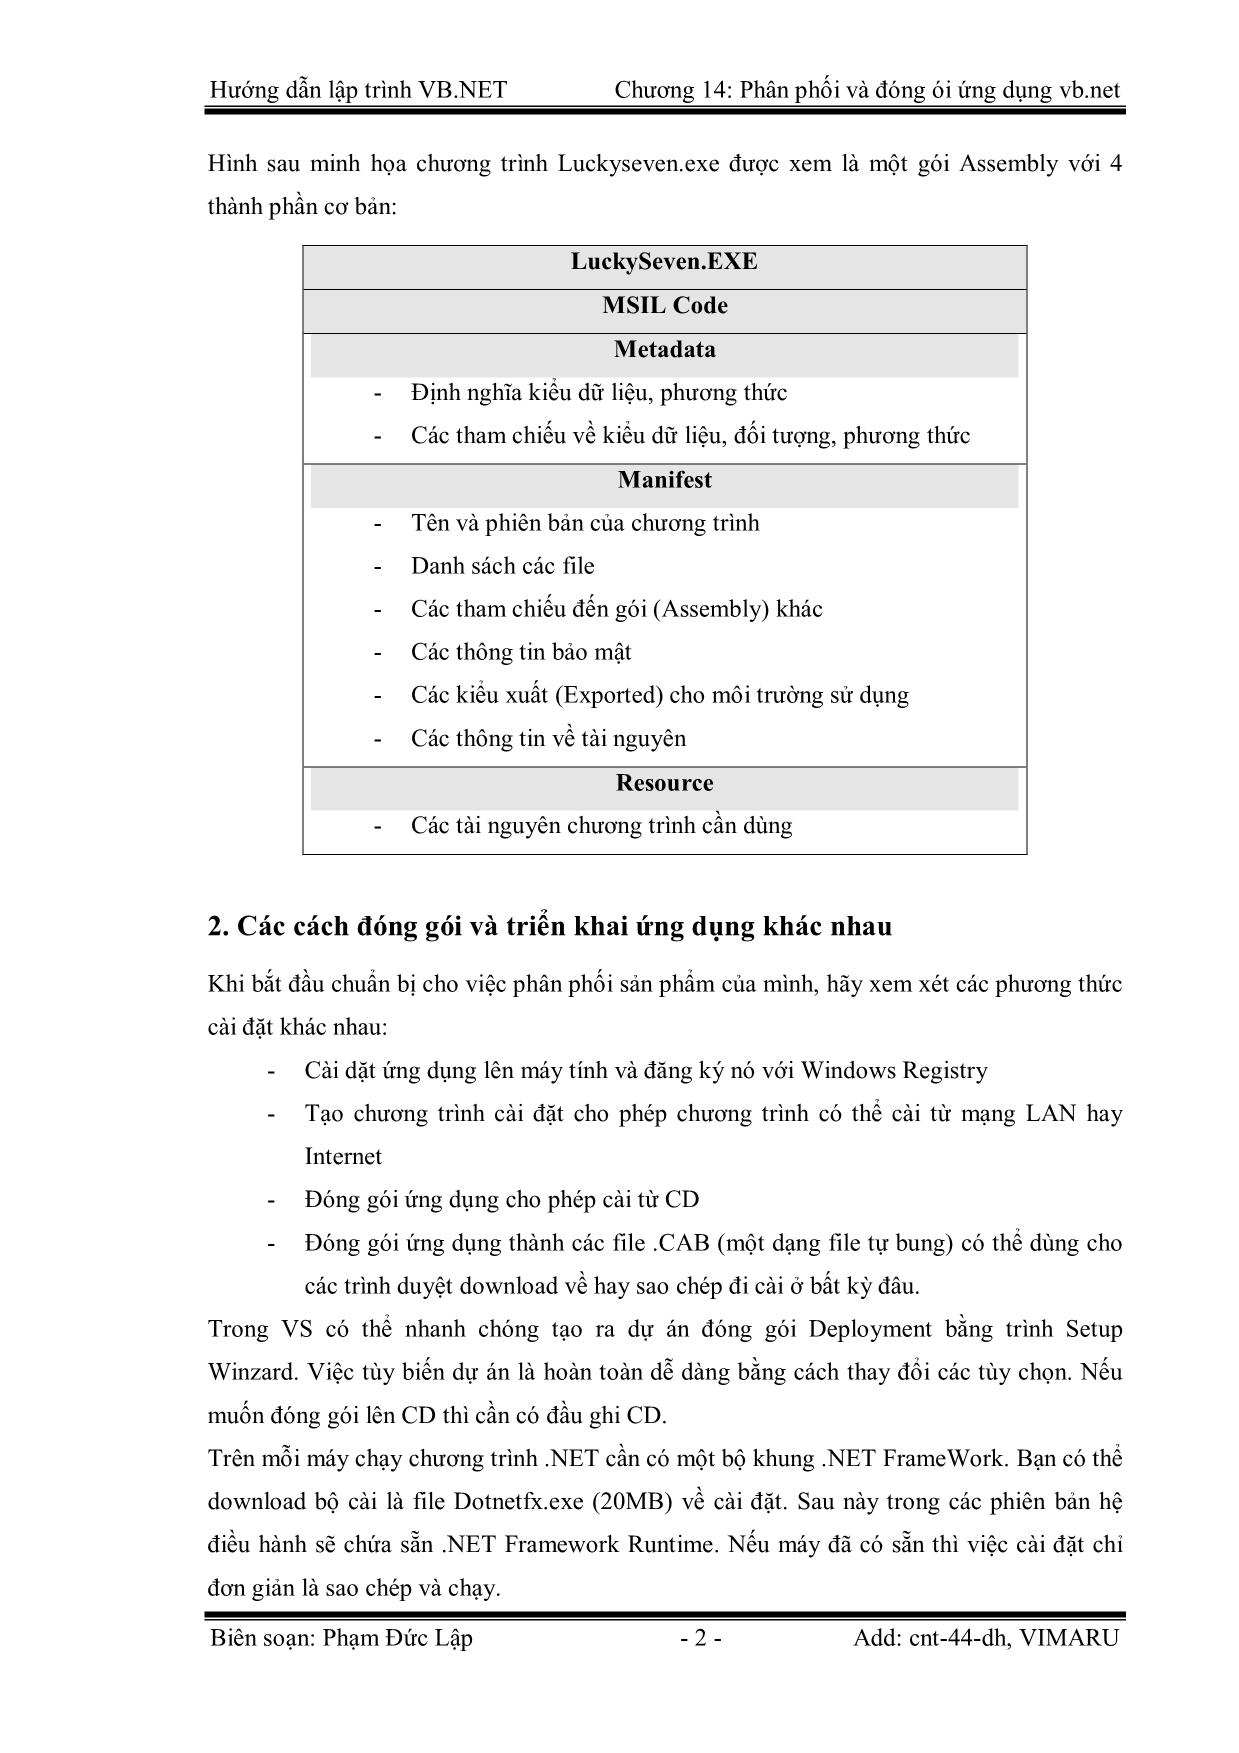 Giáo trình Hướng dẫn lập trình VB.NET - Chương 14: Phân phối và đóng gói ứng dụng Visual Basic.Net - Phạm Đức Lập trang 2